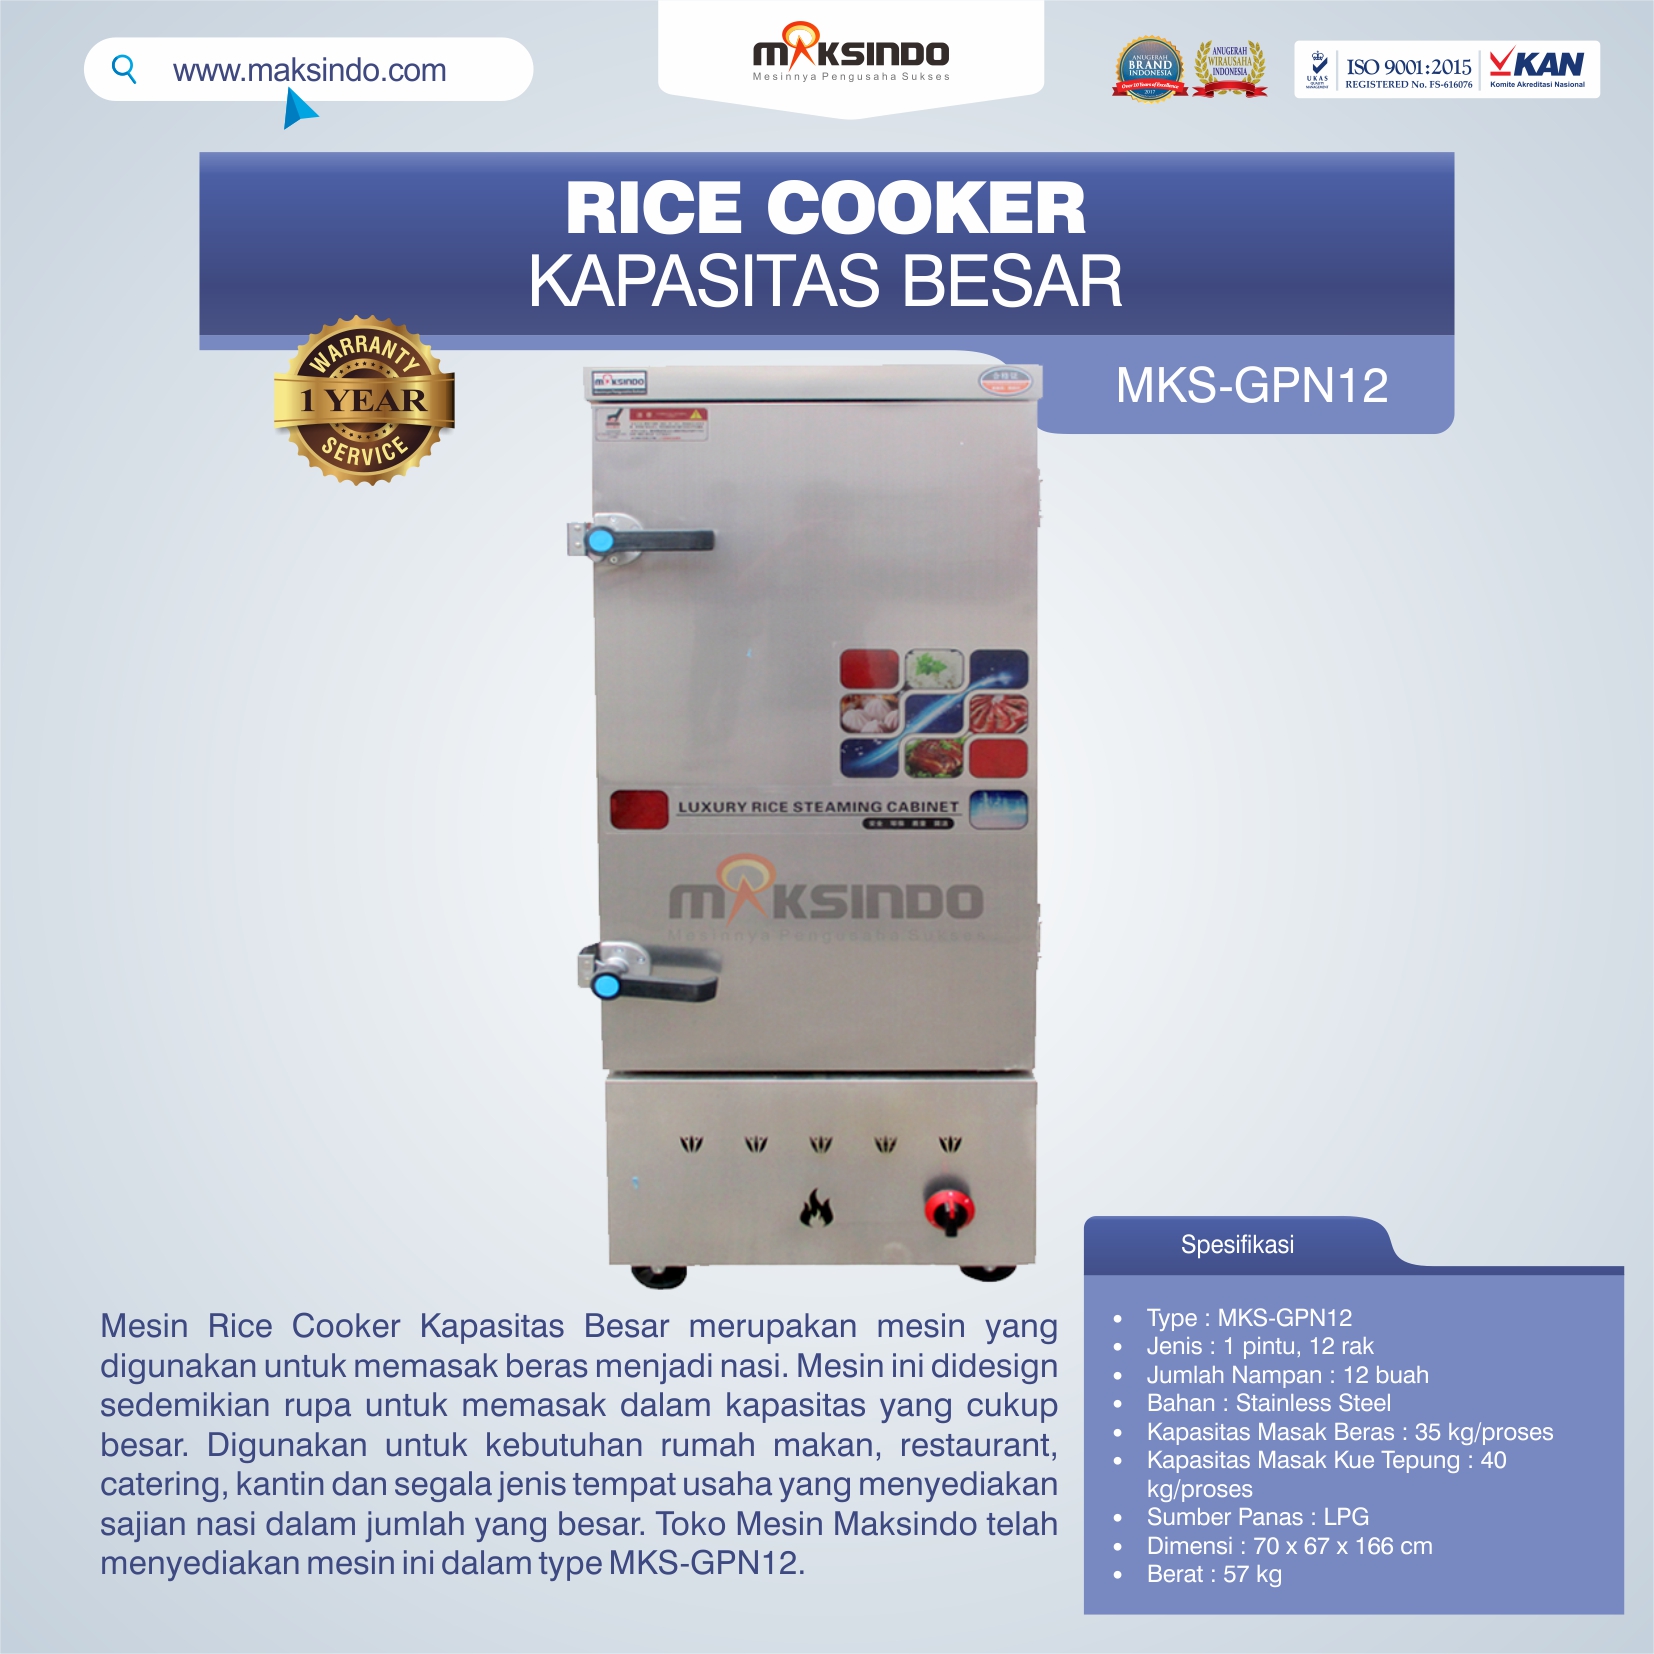 Jual Mesin Rice Cooker Kapasitas Besar MKS-GPN12 di Tangerang